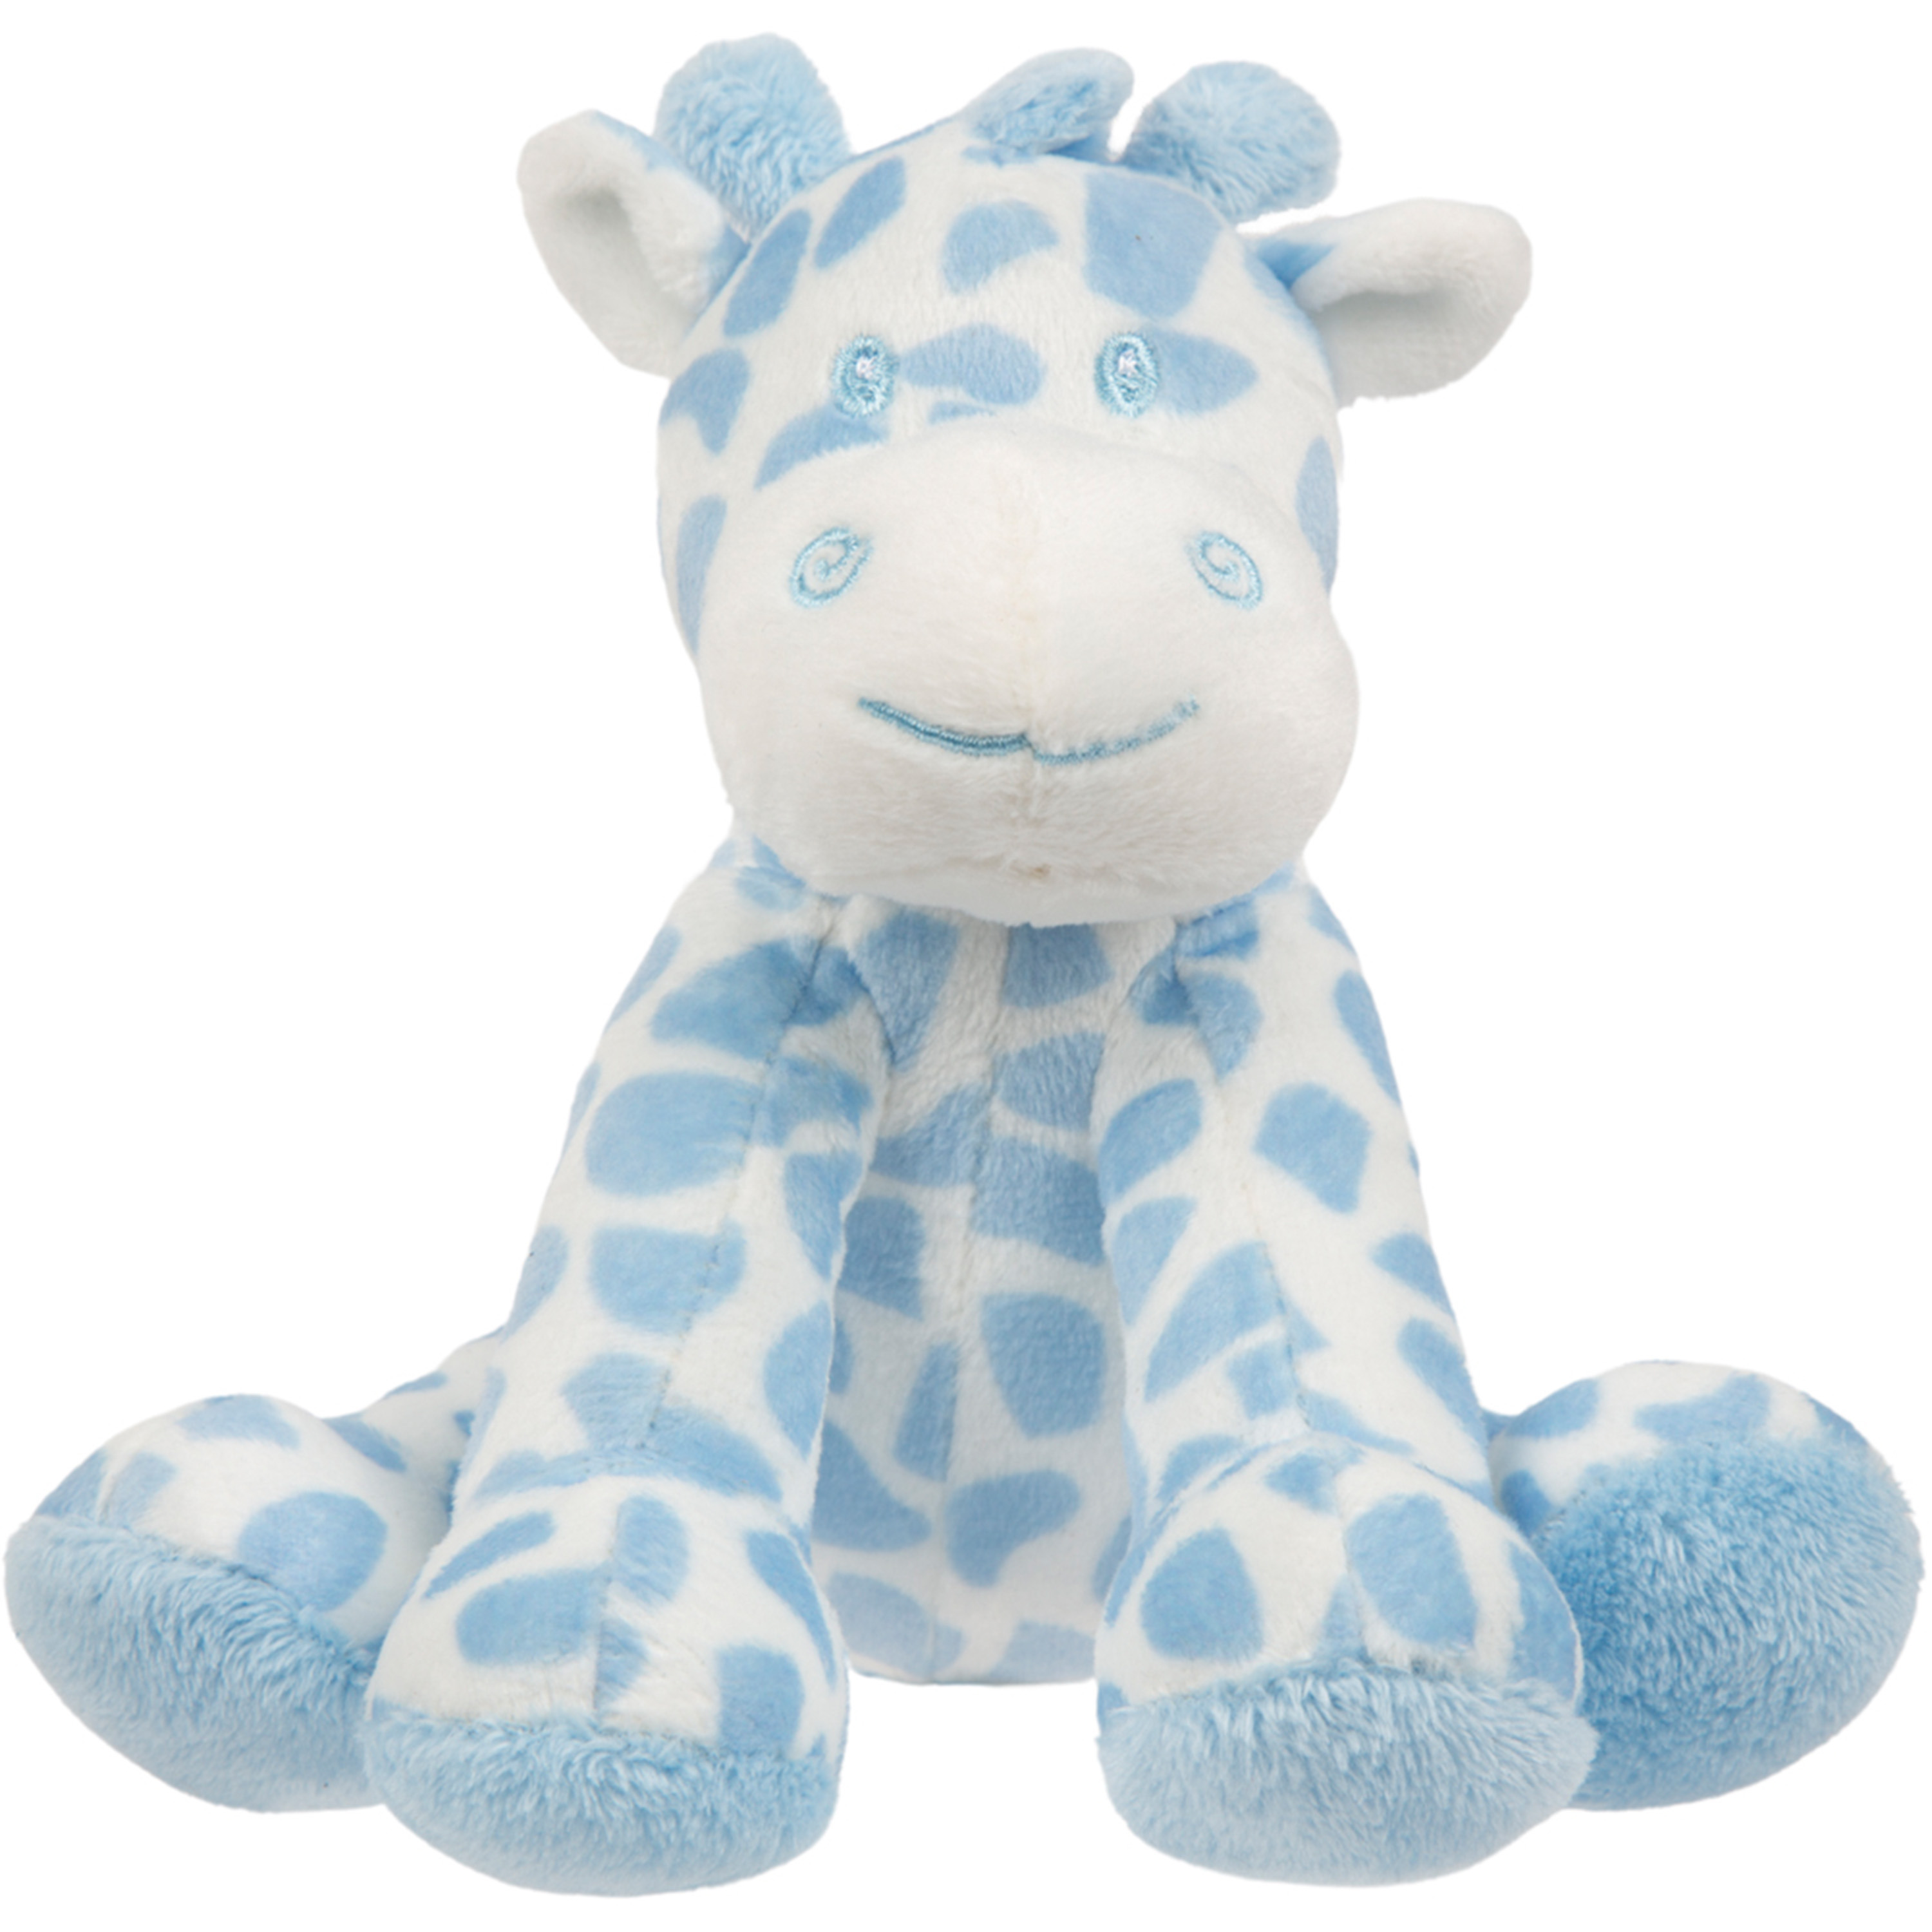 Suki Gifts pluche gevlekte giraffe knuffeldier blauw-wit zittend 14 cm